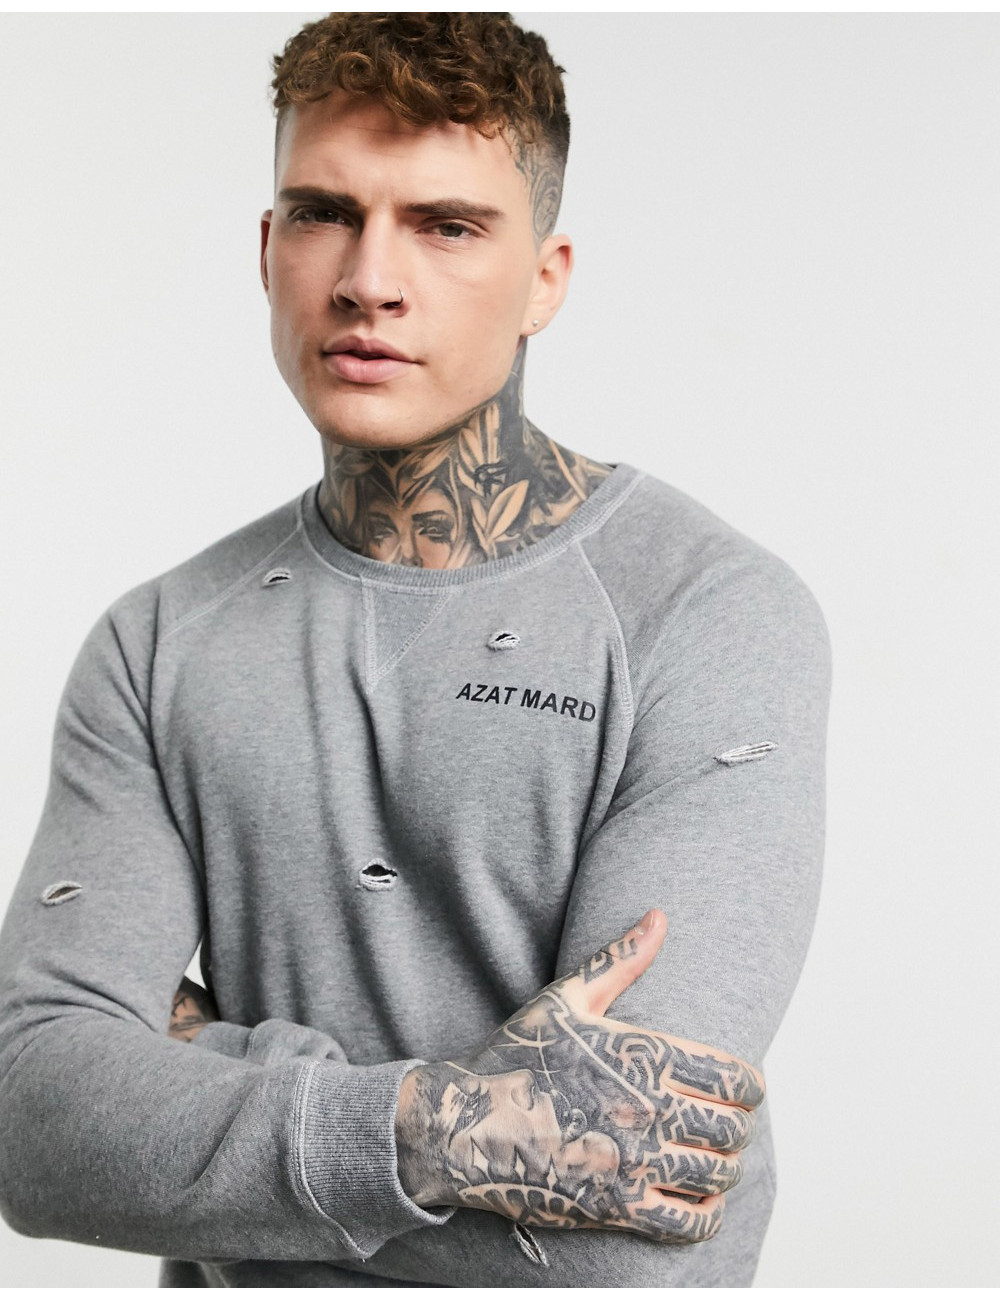 Azat Mard sweatshirt in grey